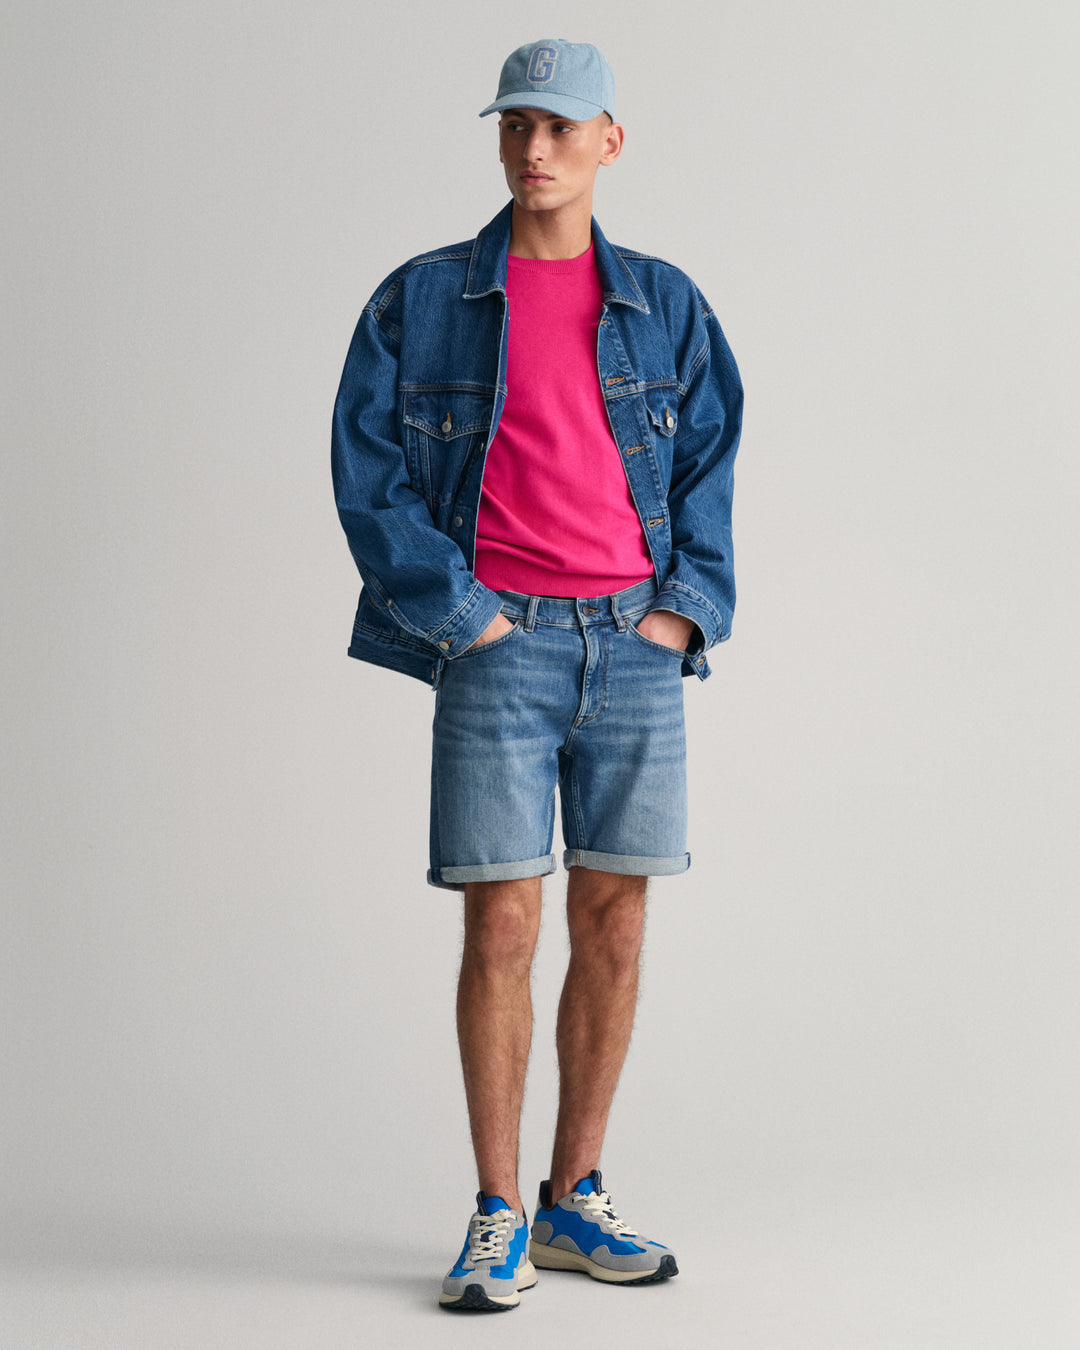 GANT Arley Gant Jeans Shorts/Bermude 205042